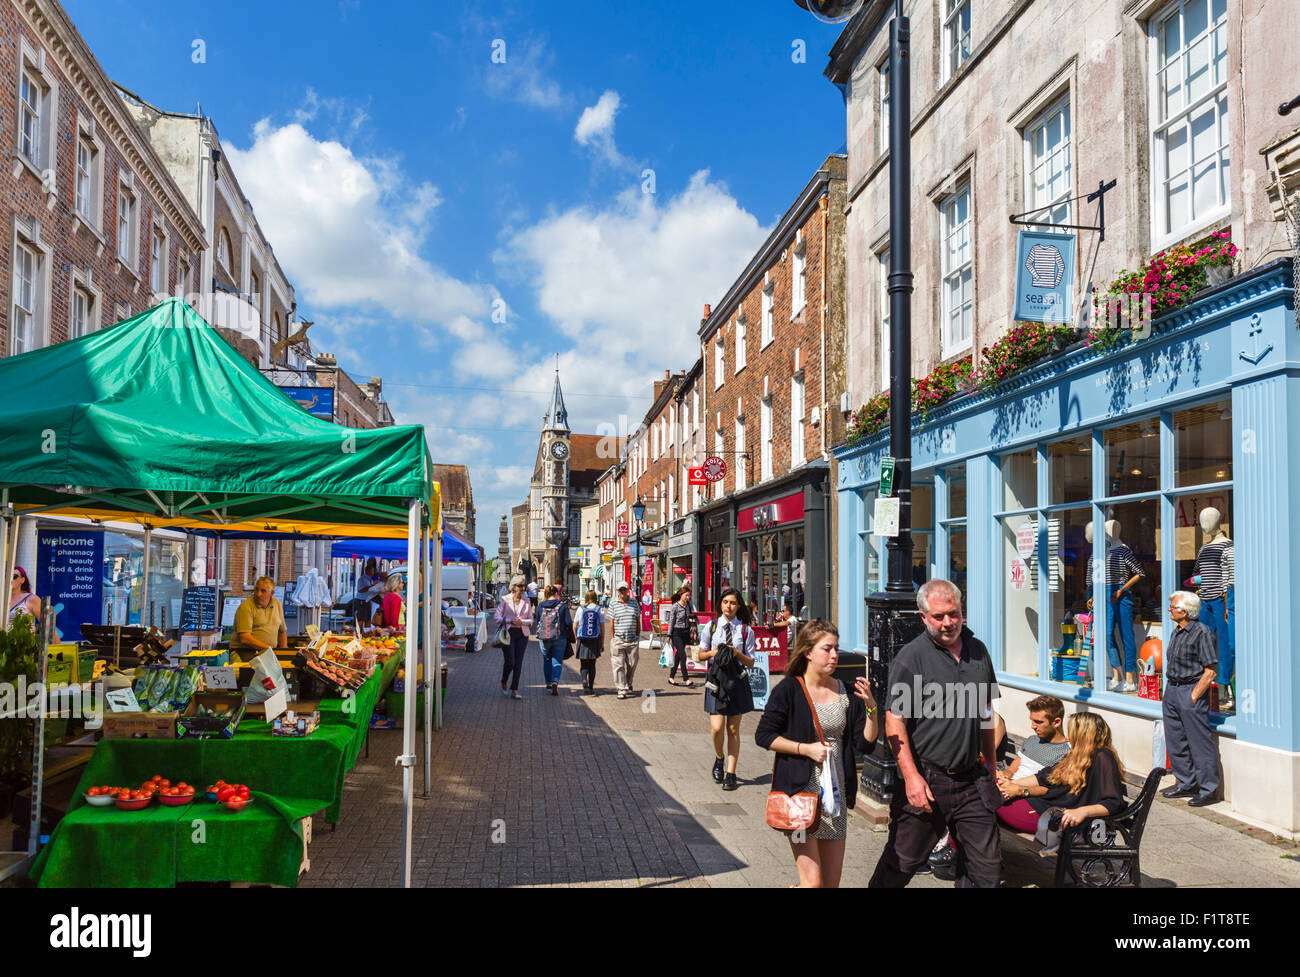 Negozi e bancarelle del mercato su Cornhill nel centro della città, Dorchester Dorset, England, Regno Unito Foto Stock